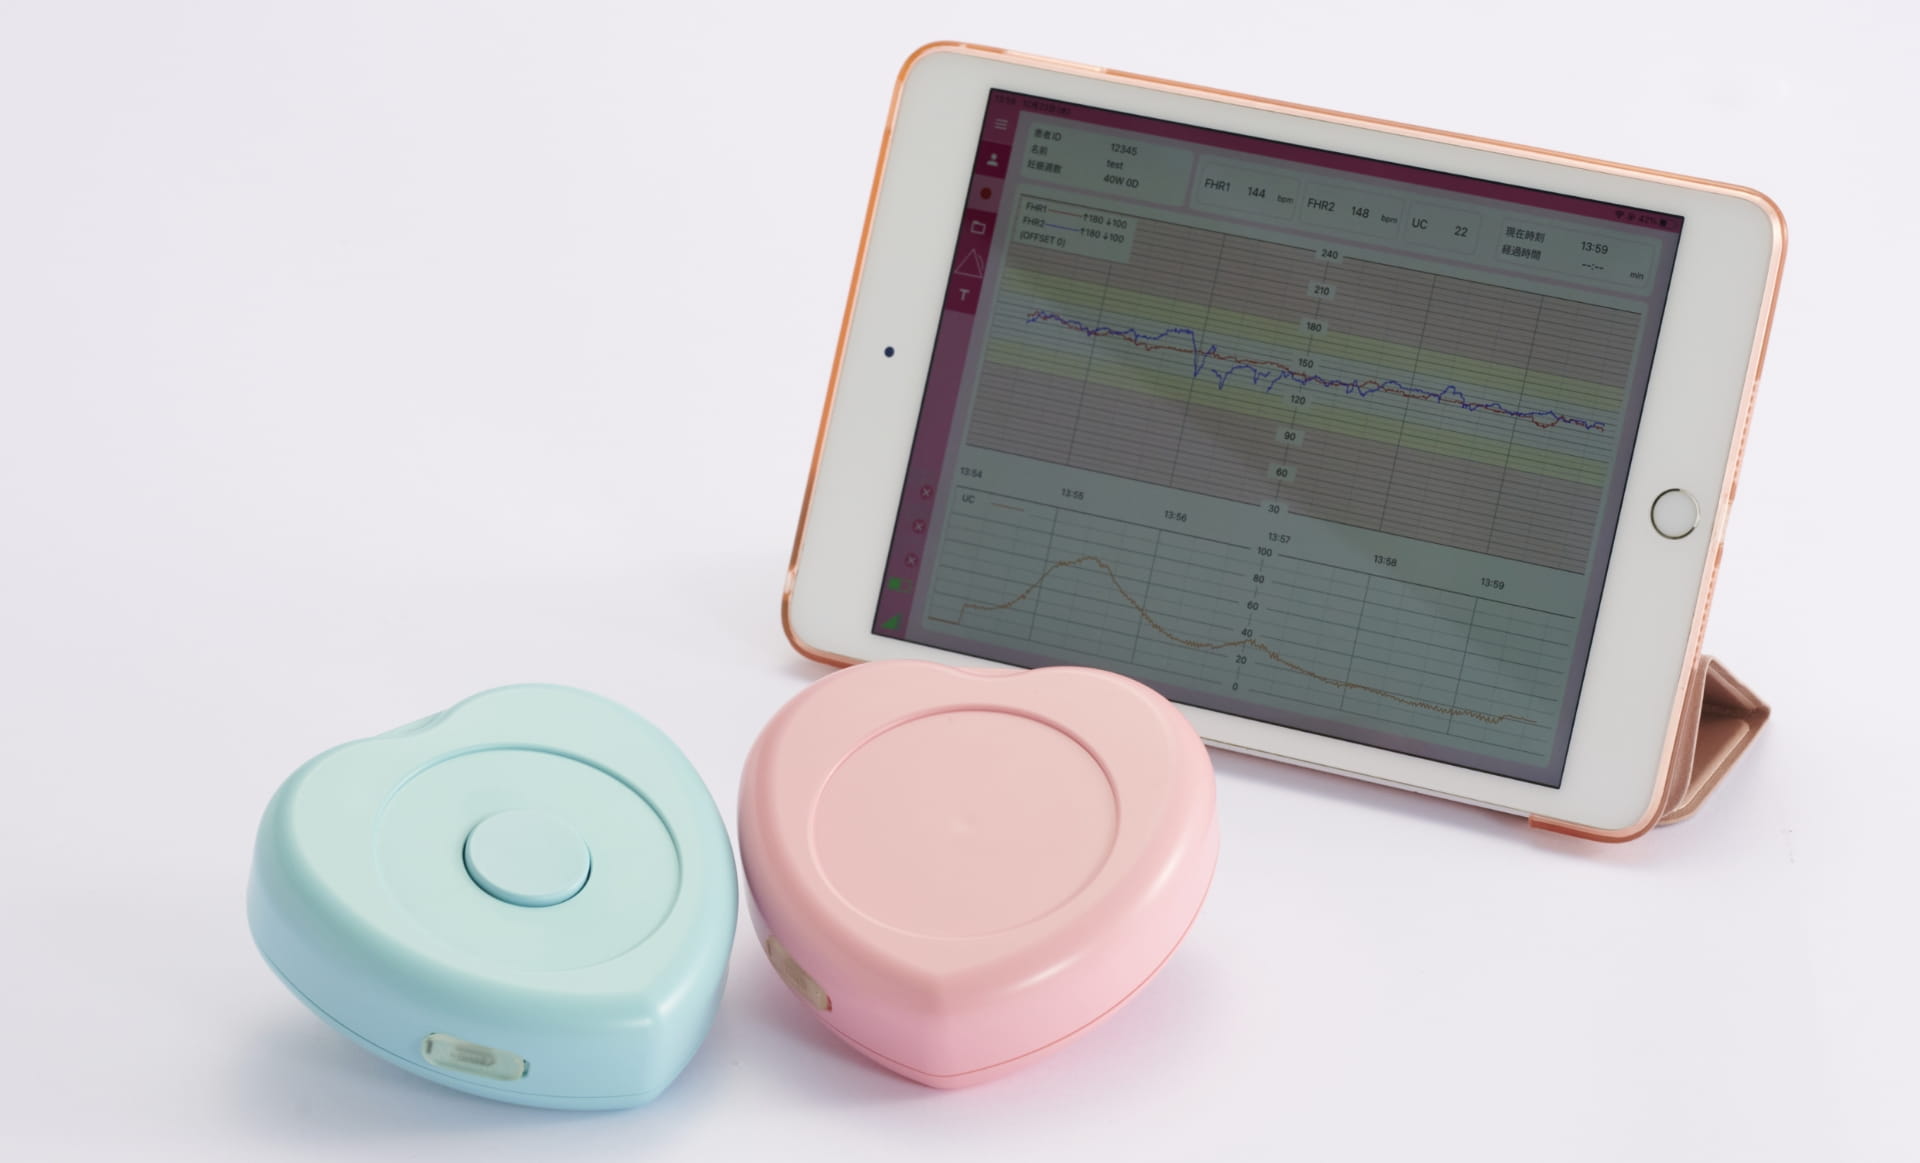 ハート型の分娩監視装置「iCTG」は、遠隔医療プラットフォーム「Melody i」を通じて、妊婦と医師をつなぐ。